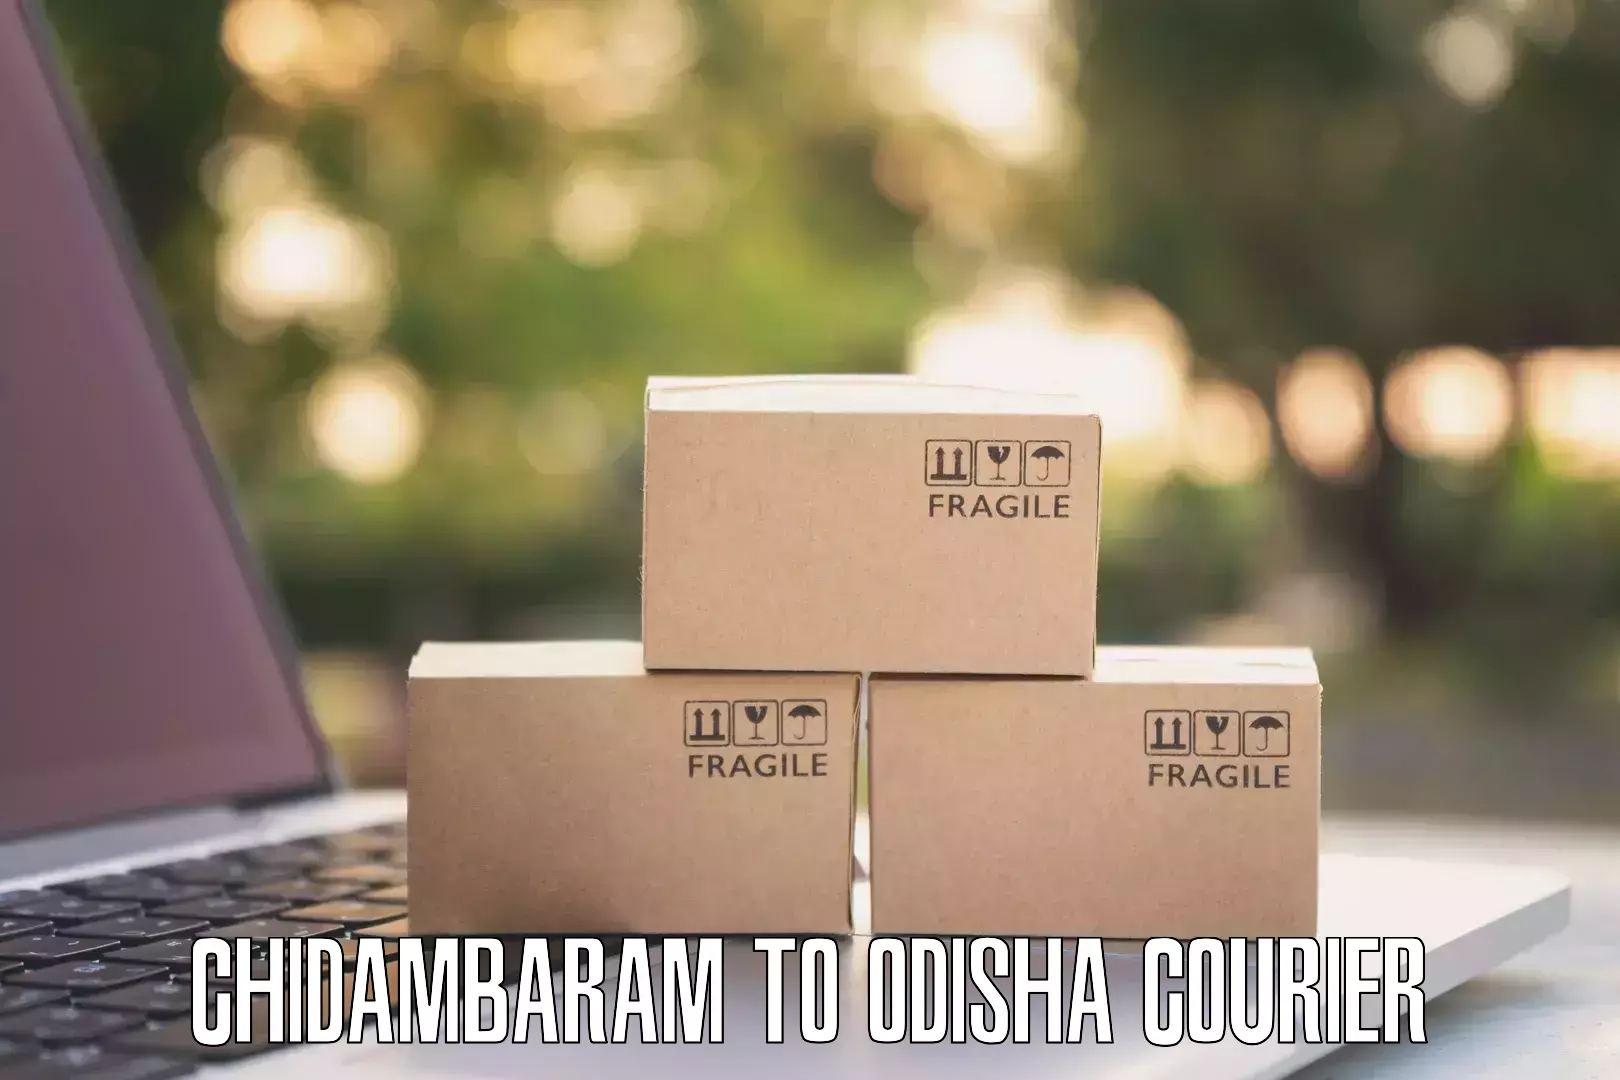 Courier app Chidambaram to Tirtol